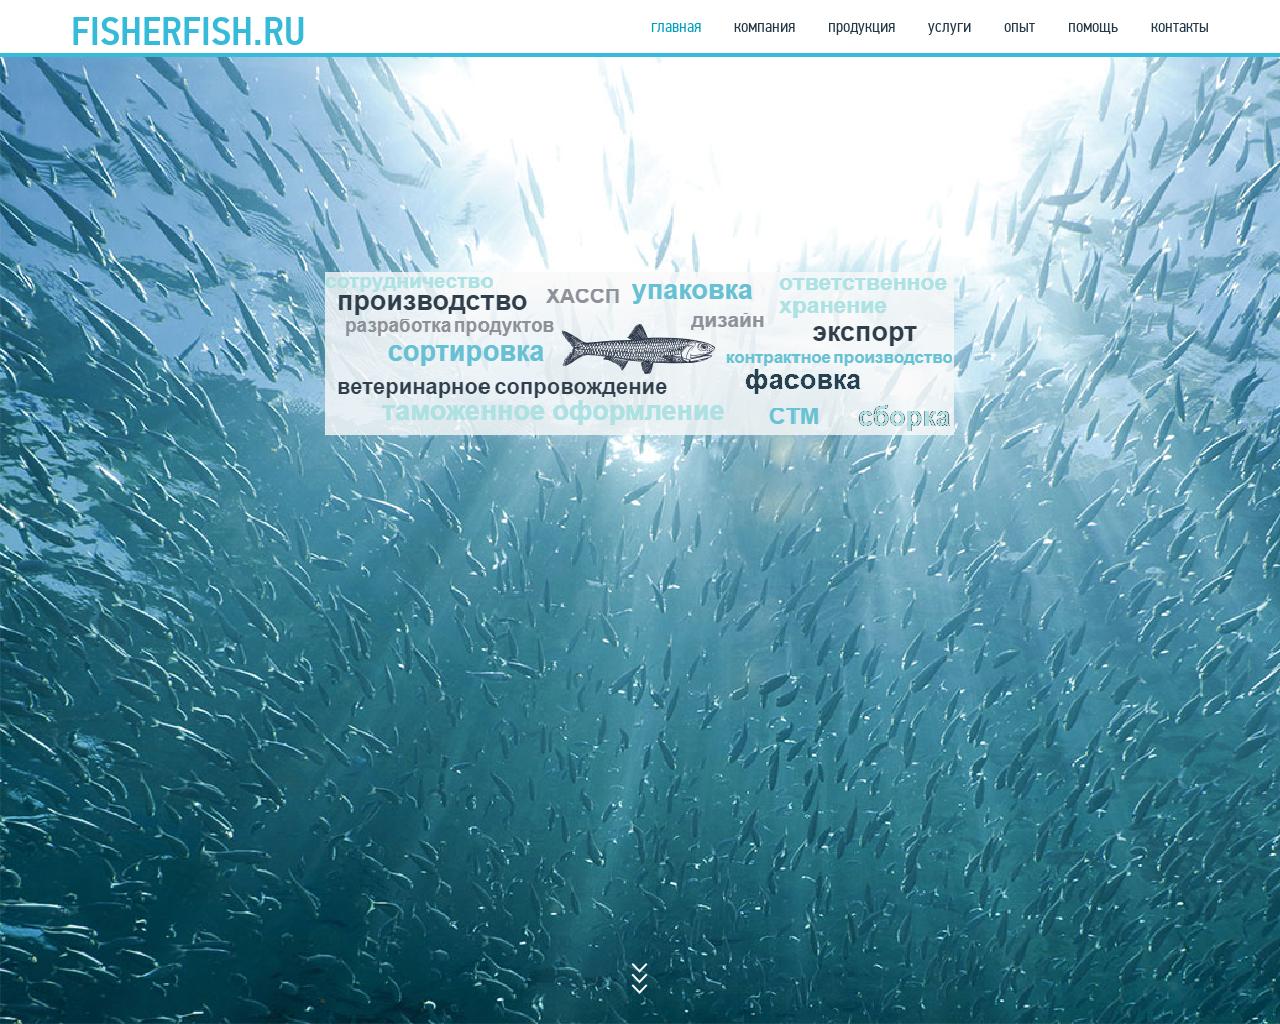 Изображение сайта fisherfish.ru в разрешении 1280x1024